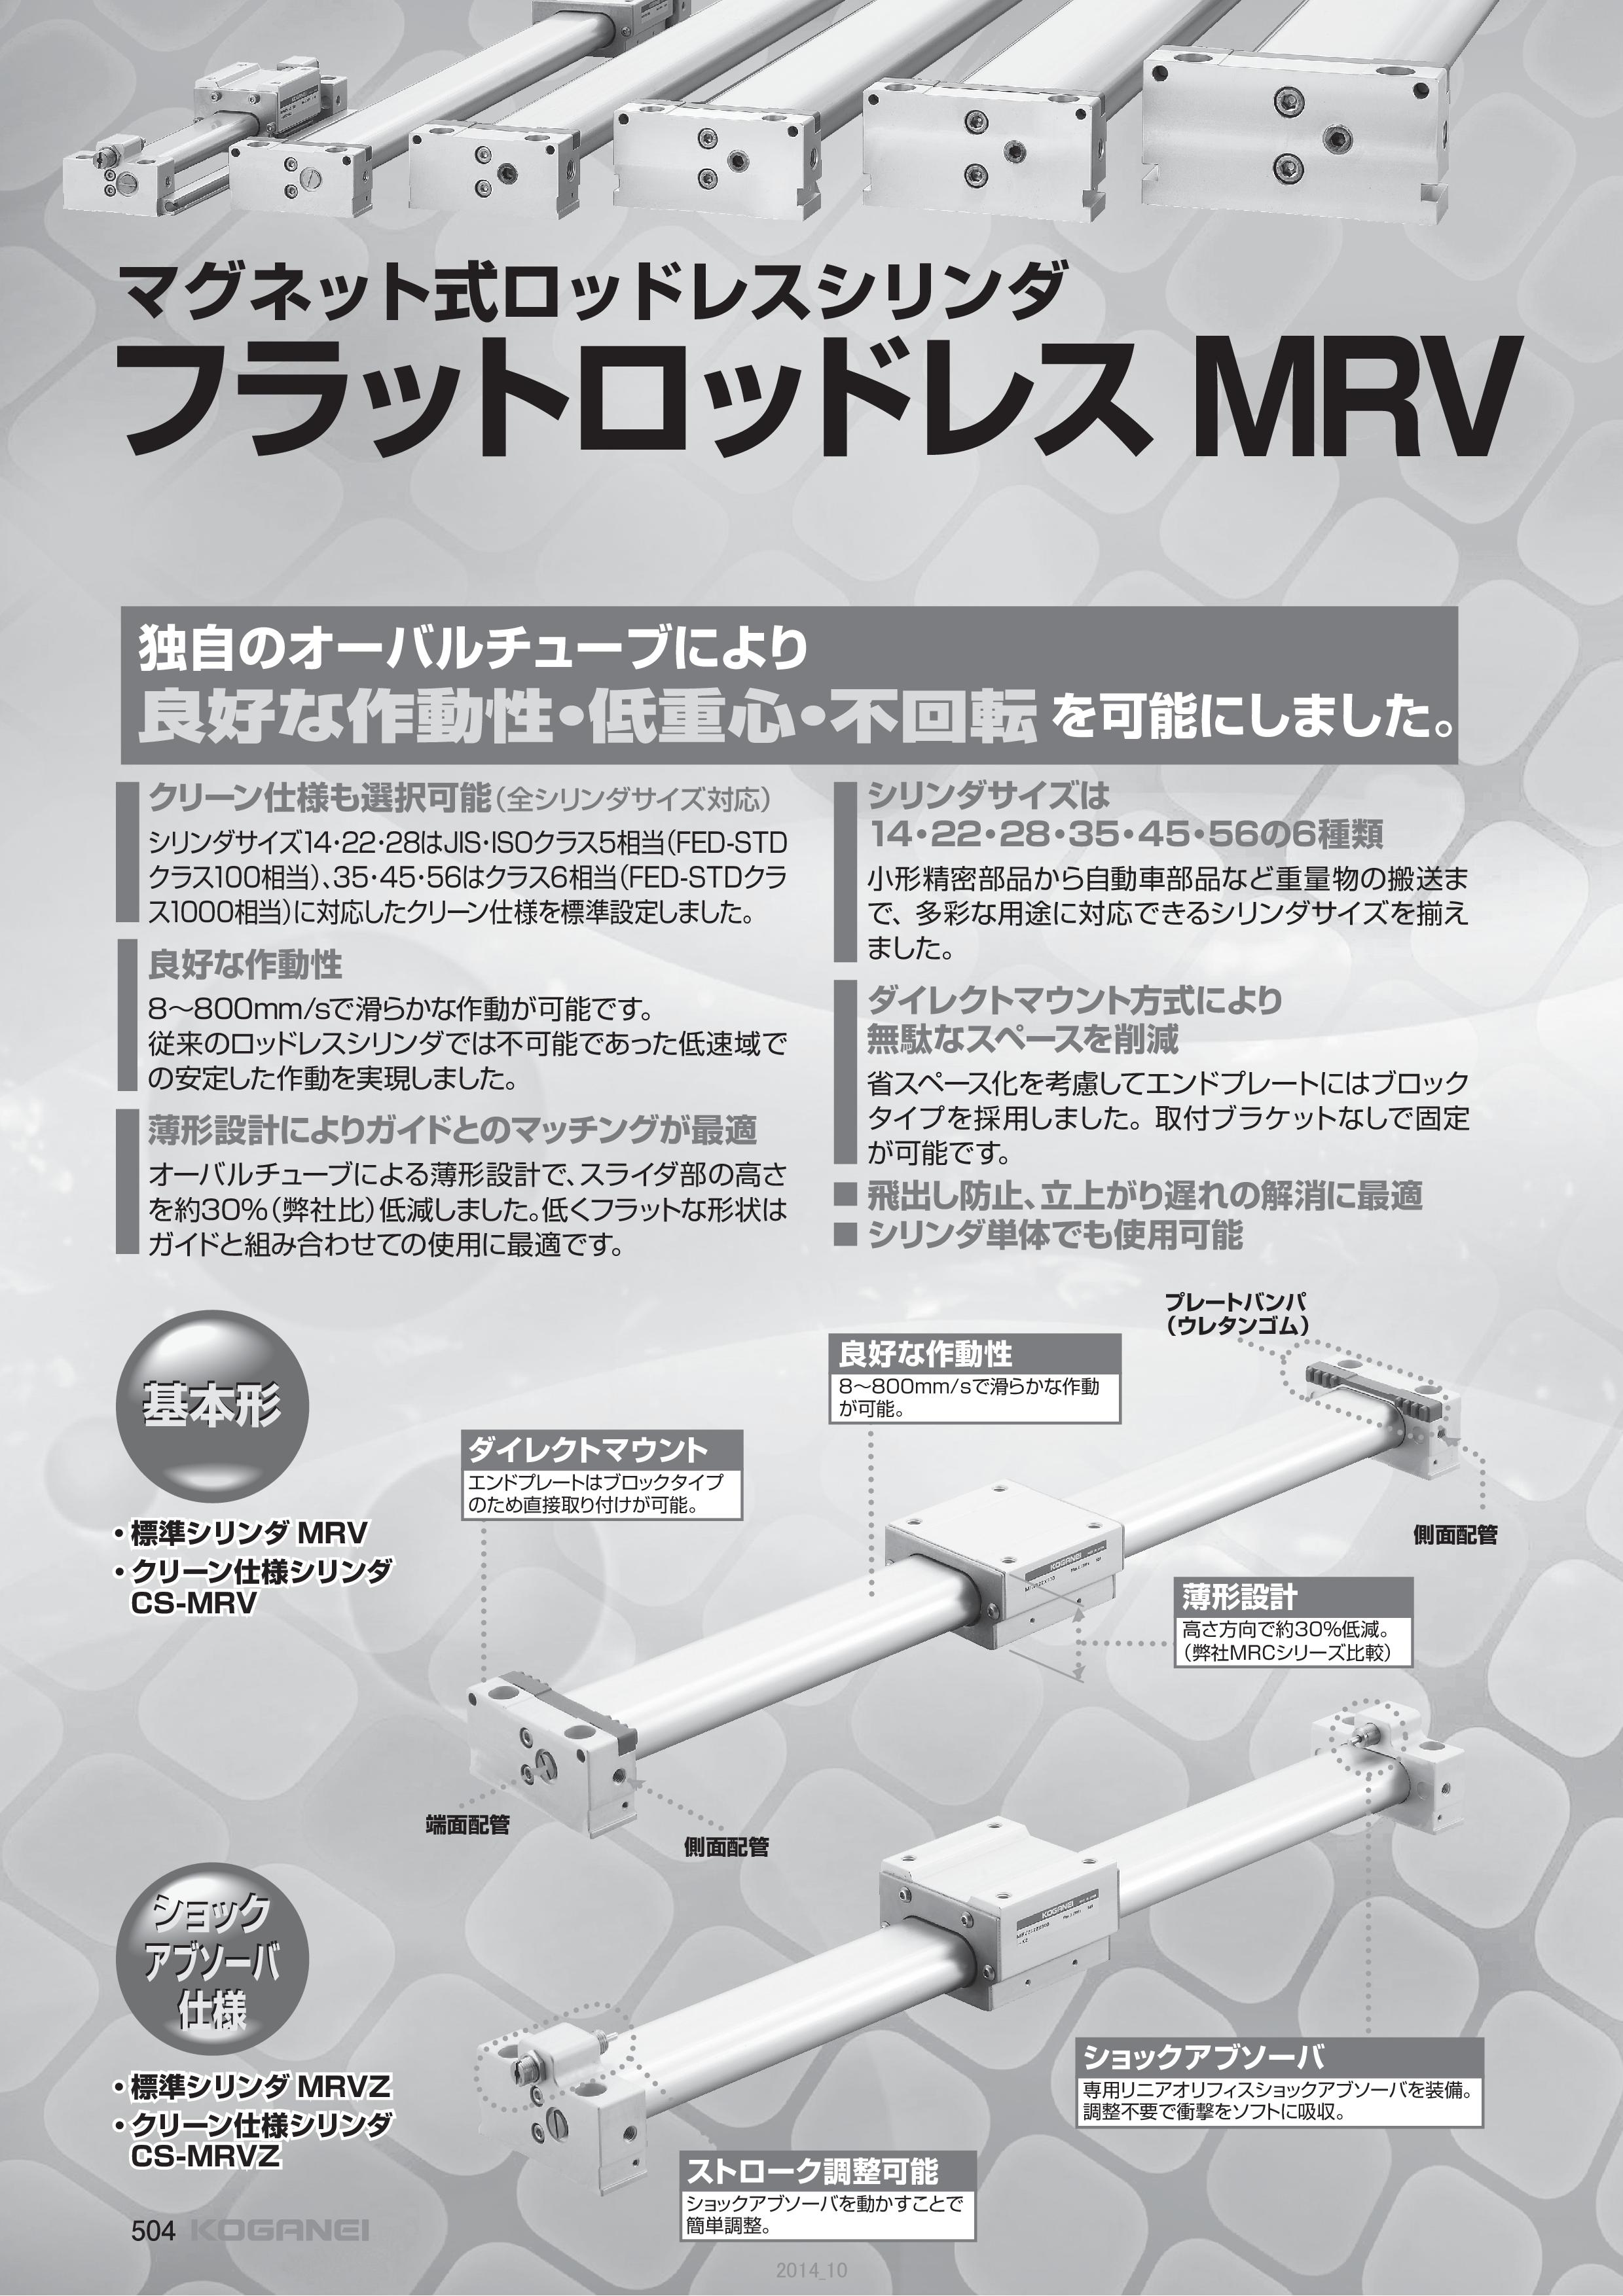 マグネット式 フラットロッドレス MRV（株式会社コガネイ）のカタログ